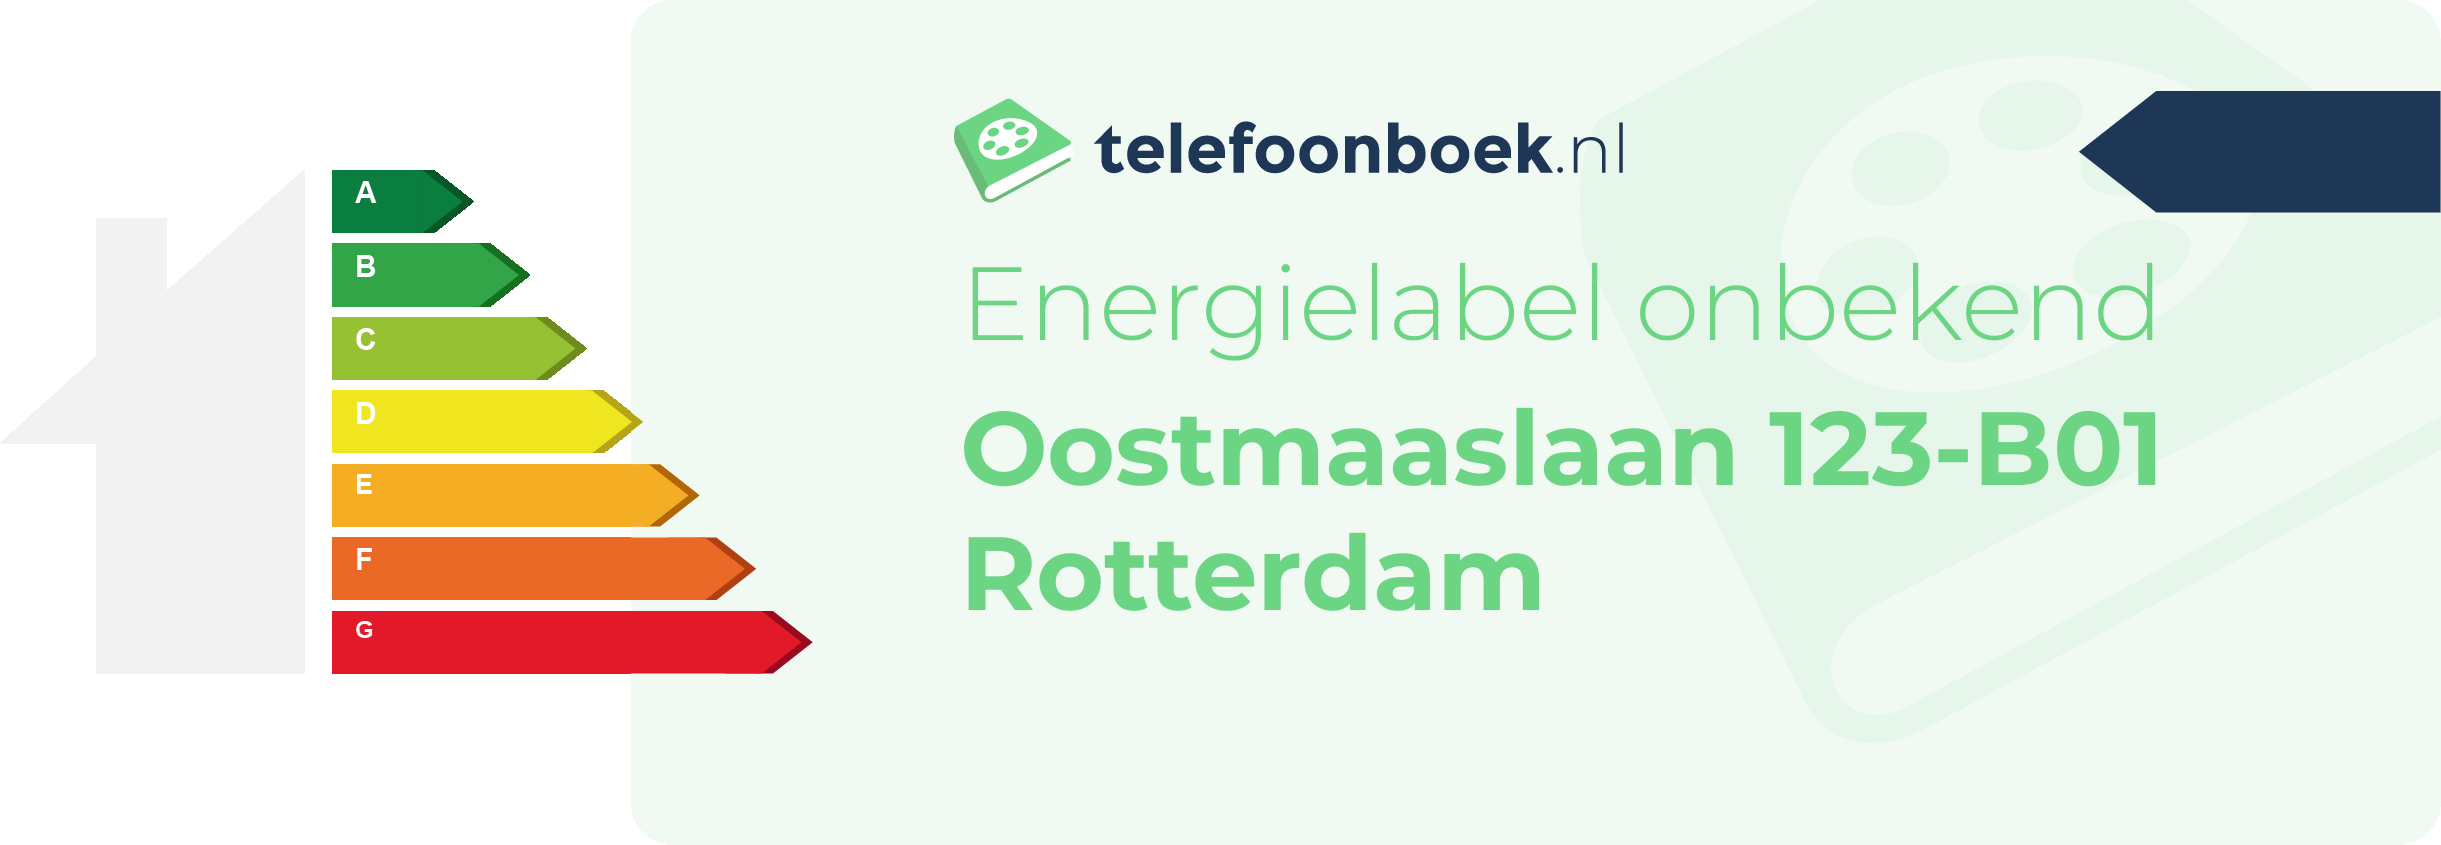 Energielabel Oostmaaslaan 123-B01 Rotterdam